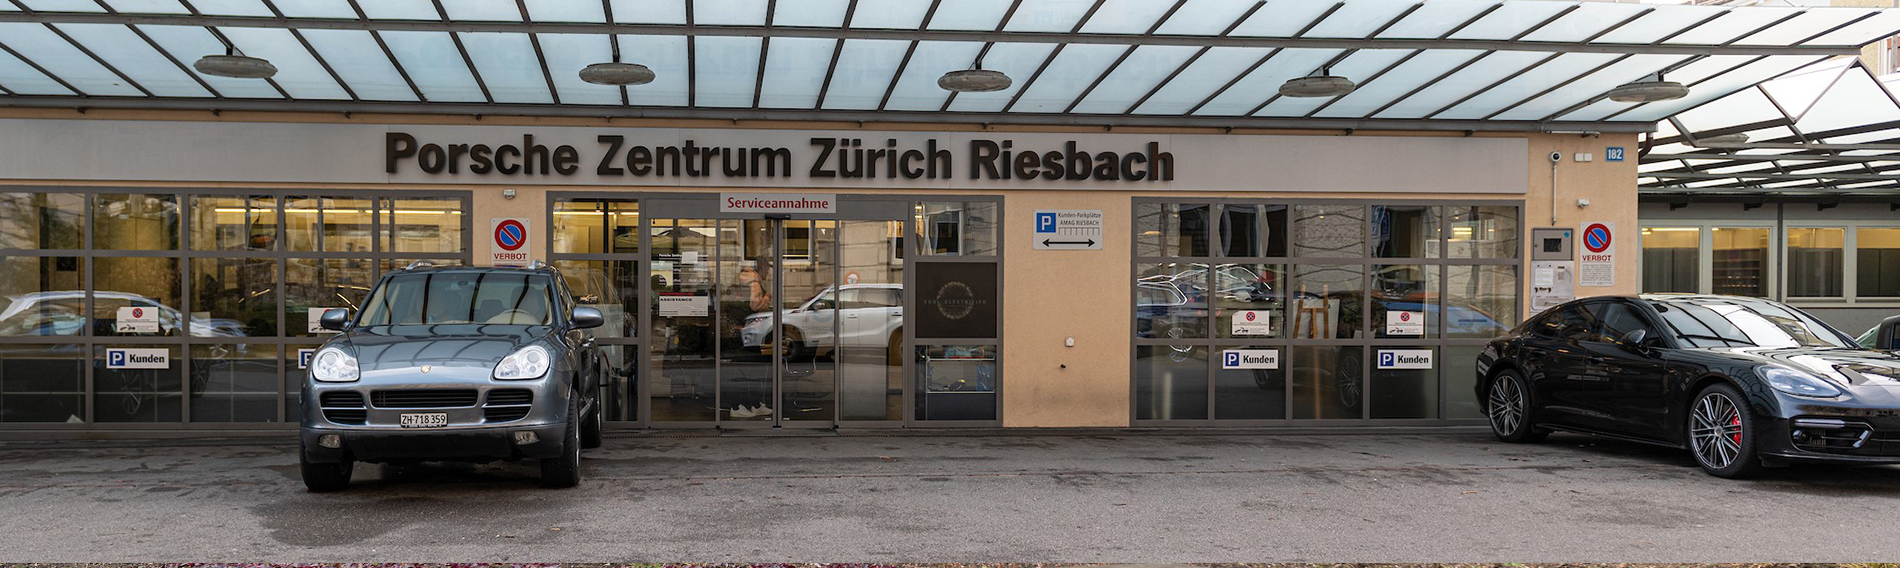 Reinigung im Porsche Zentrum Zürich